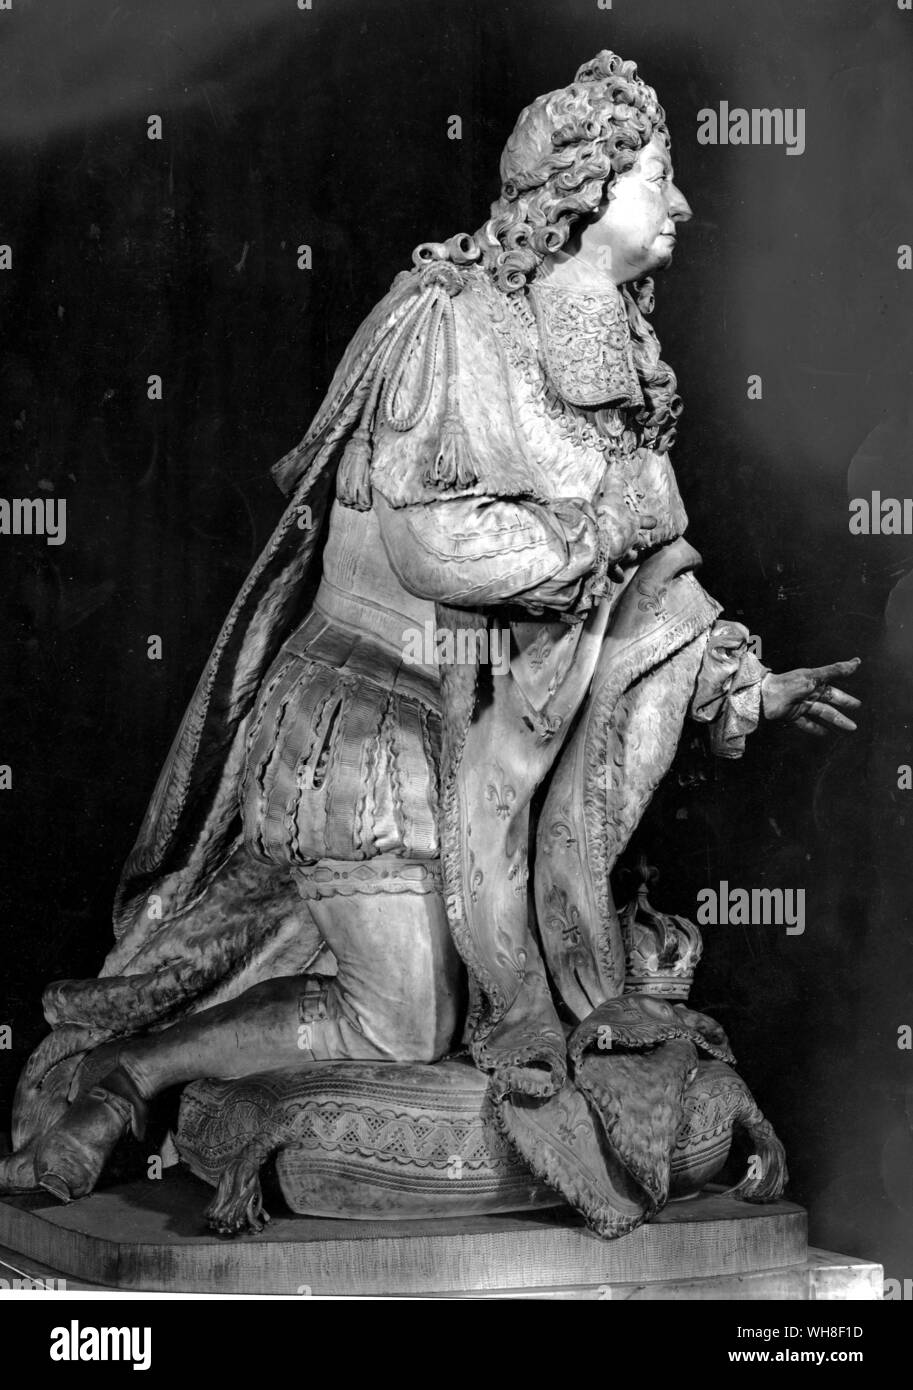 König Ludwig XIV. von Frankreich, der Sonnenkönig, (1638-1715), regierte 1643-1715. Gebet von Antoine Coysevox gezeigt, (1640-1720), französischer Barock Bildhauer, 1715. Der Sonnenkönig von Nancy Mitford, Seite 172. Stockfoto